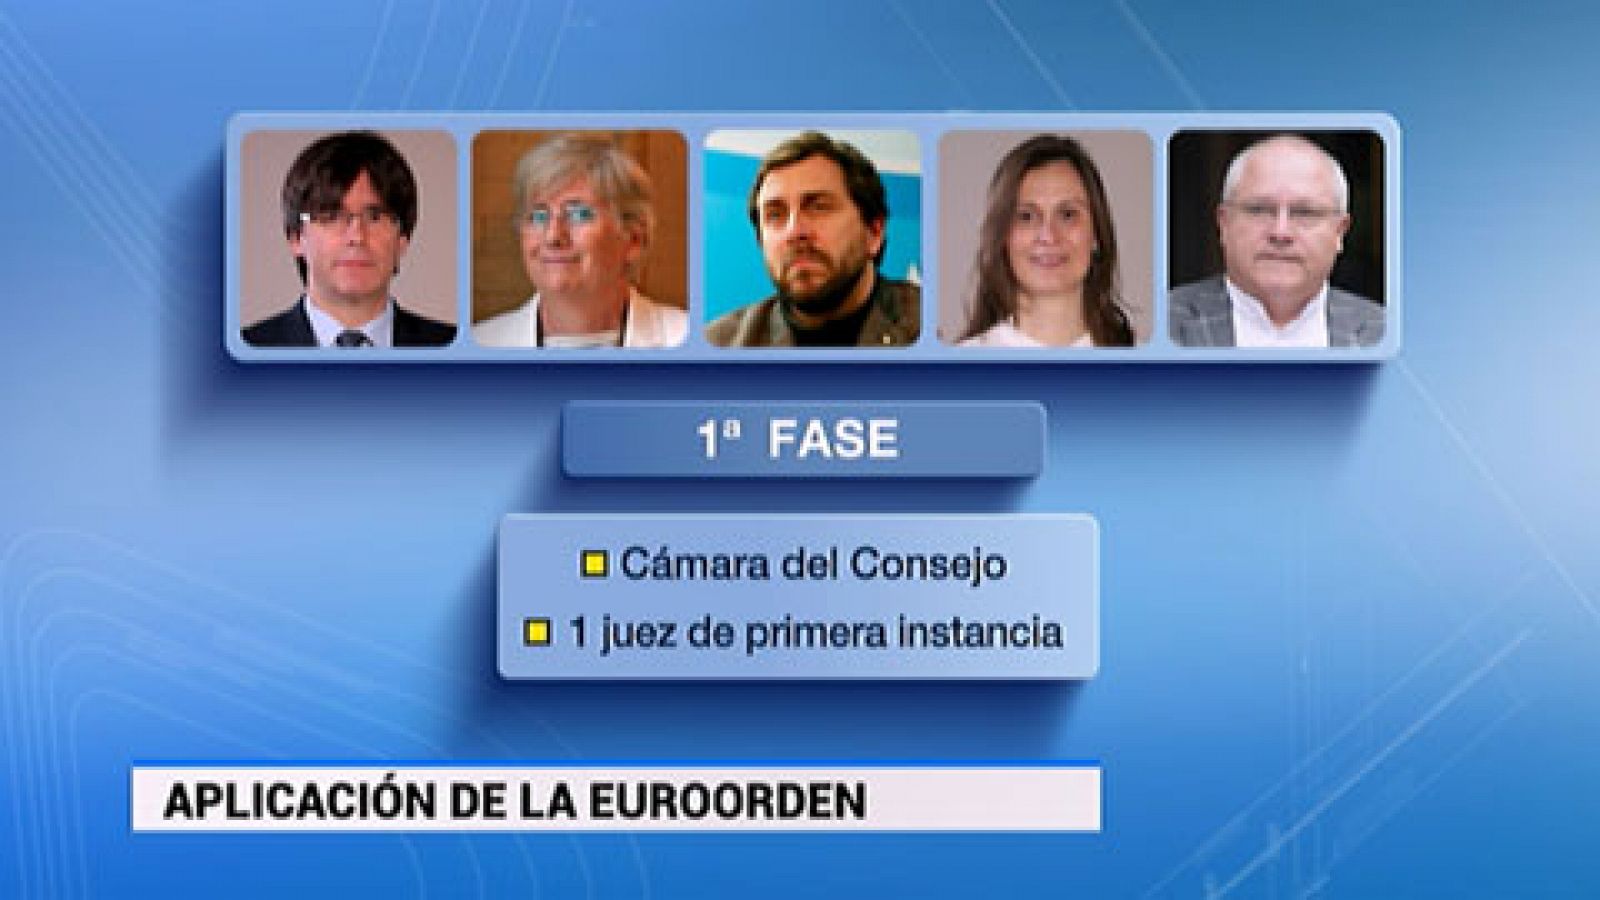 La extradición de Puigdemont y los cuatro exconsejeros podría demorarse hasta tres meses